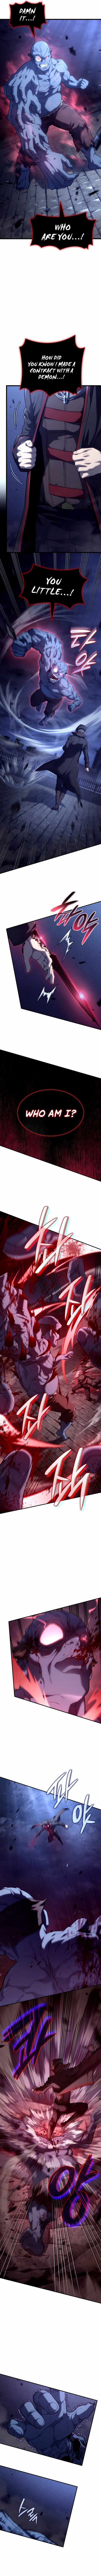 read Revenge of the Iron-Blooded Sword Hound Chapter 74 Manga Online Free at Mangabuddy, MangaNato,Manhwatop | MangaSo.com